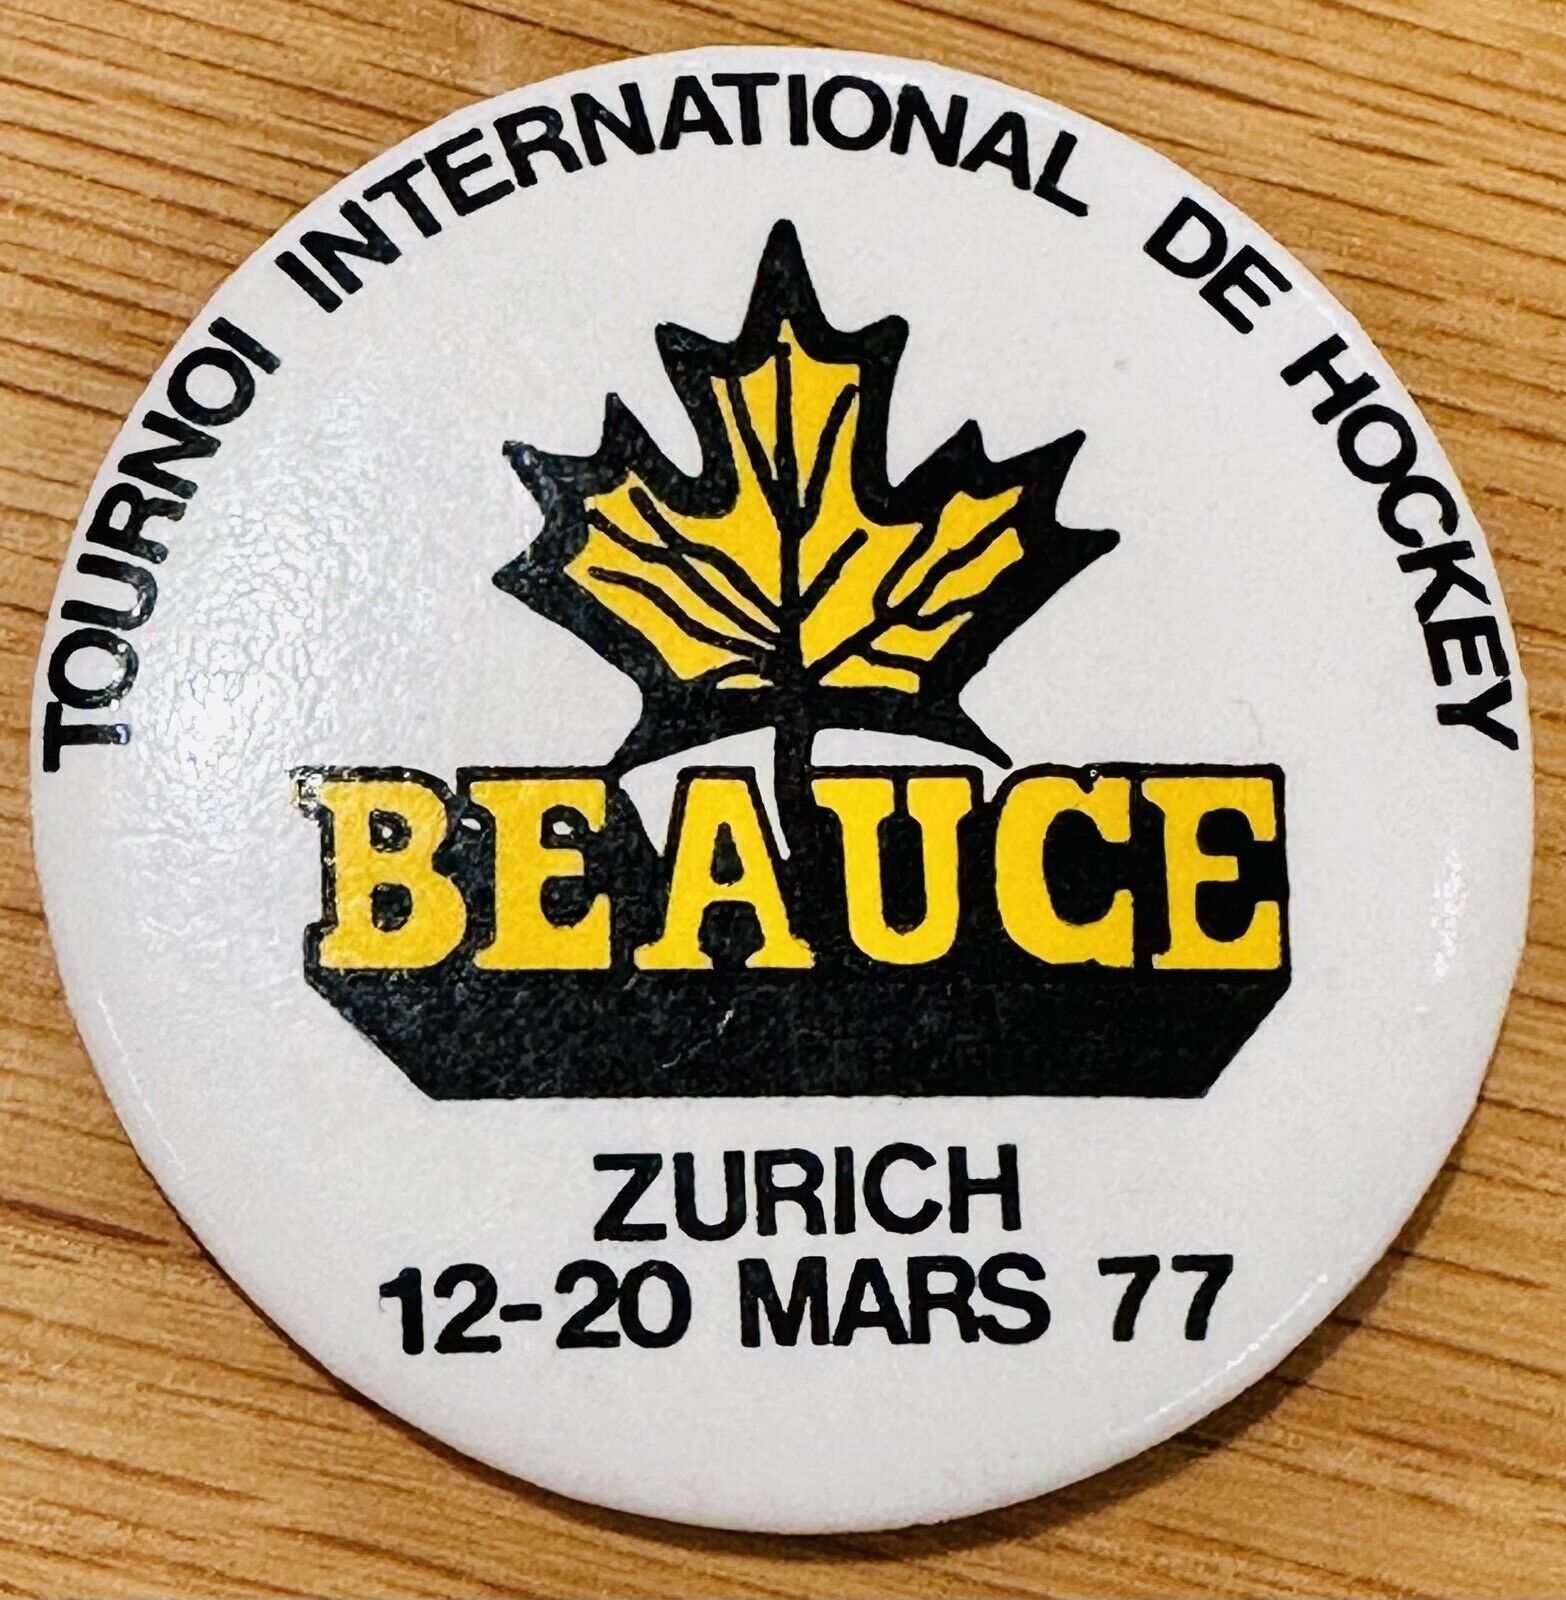 1977 Tournoi International De Hockey Beauce Zurich 12-20 Mars 77 Pinback Button